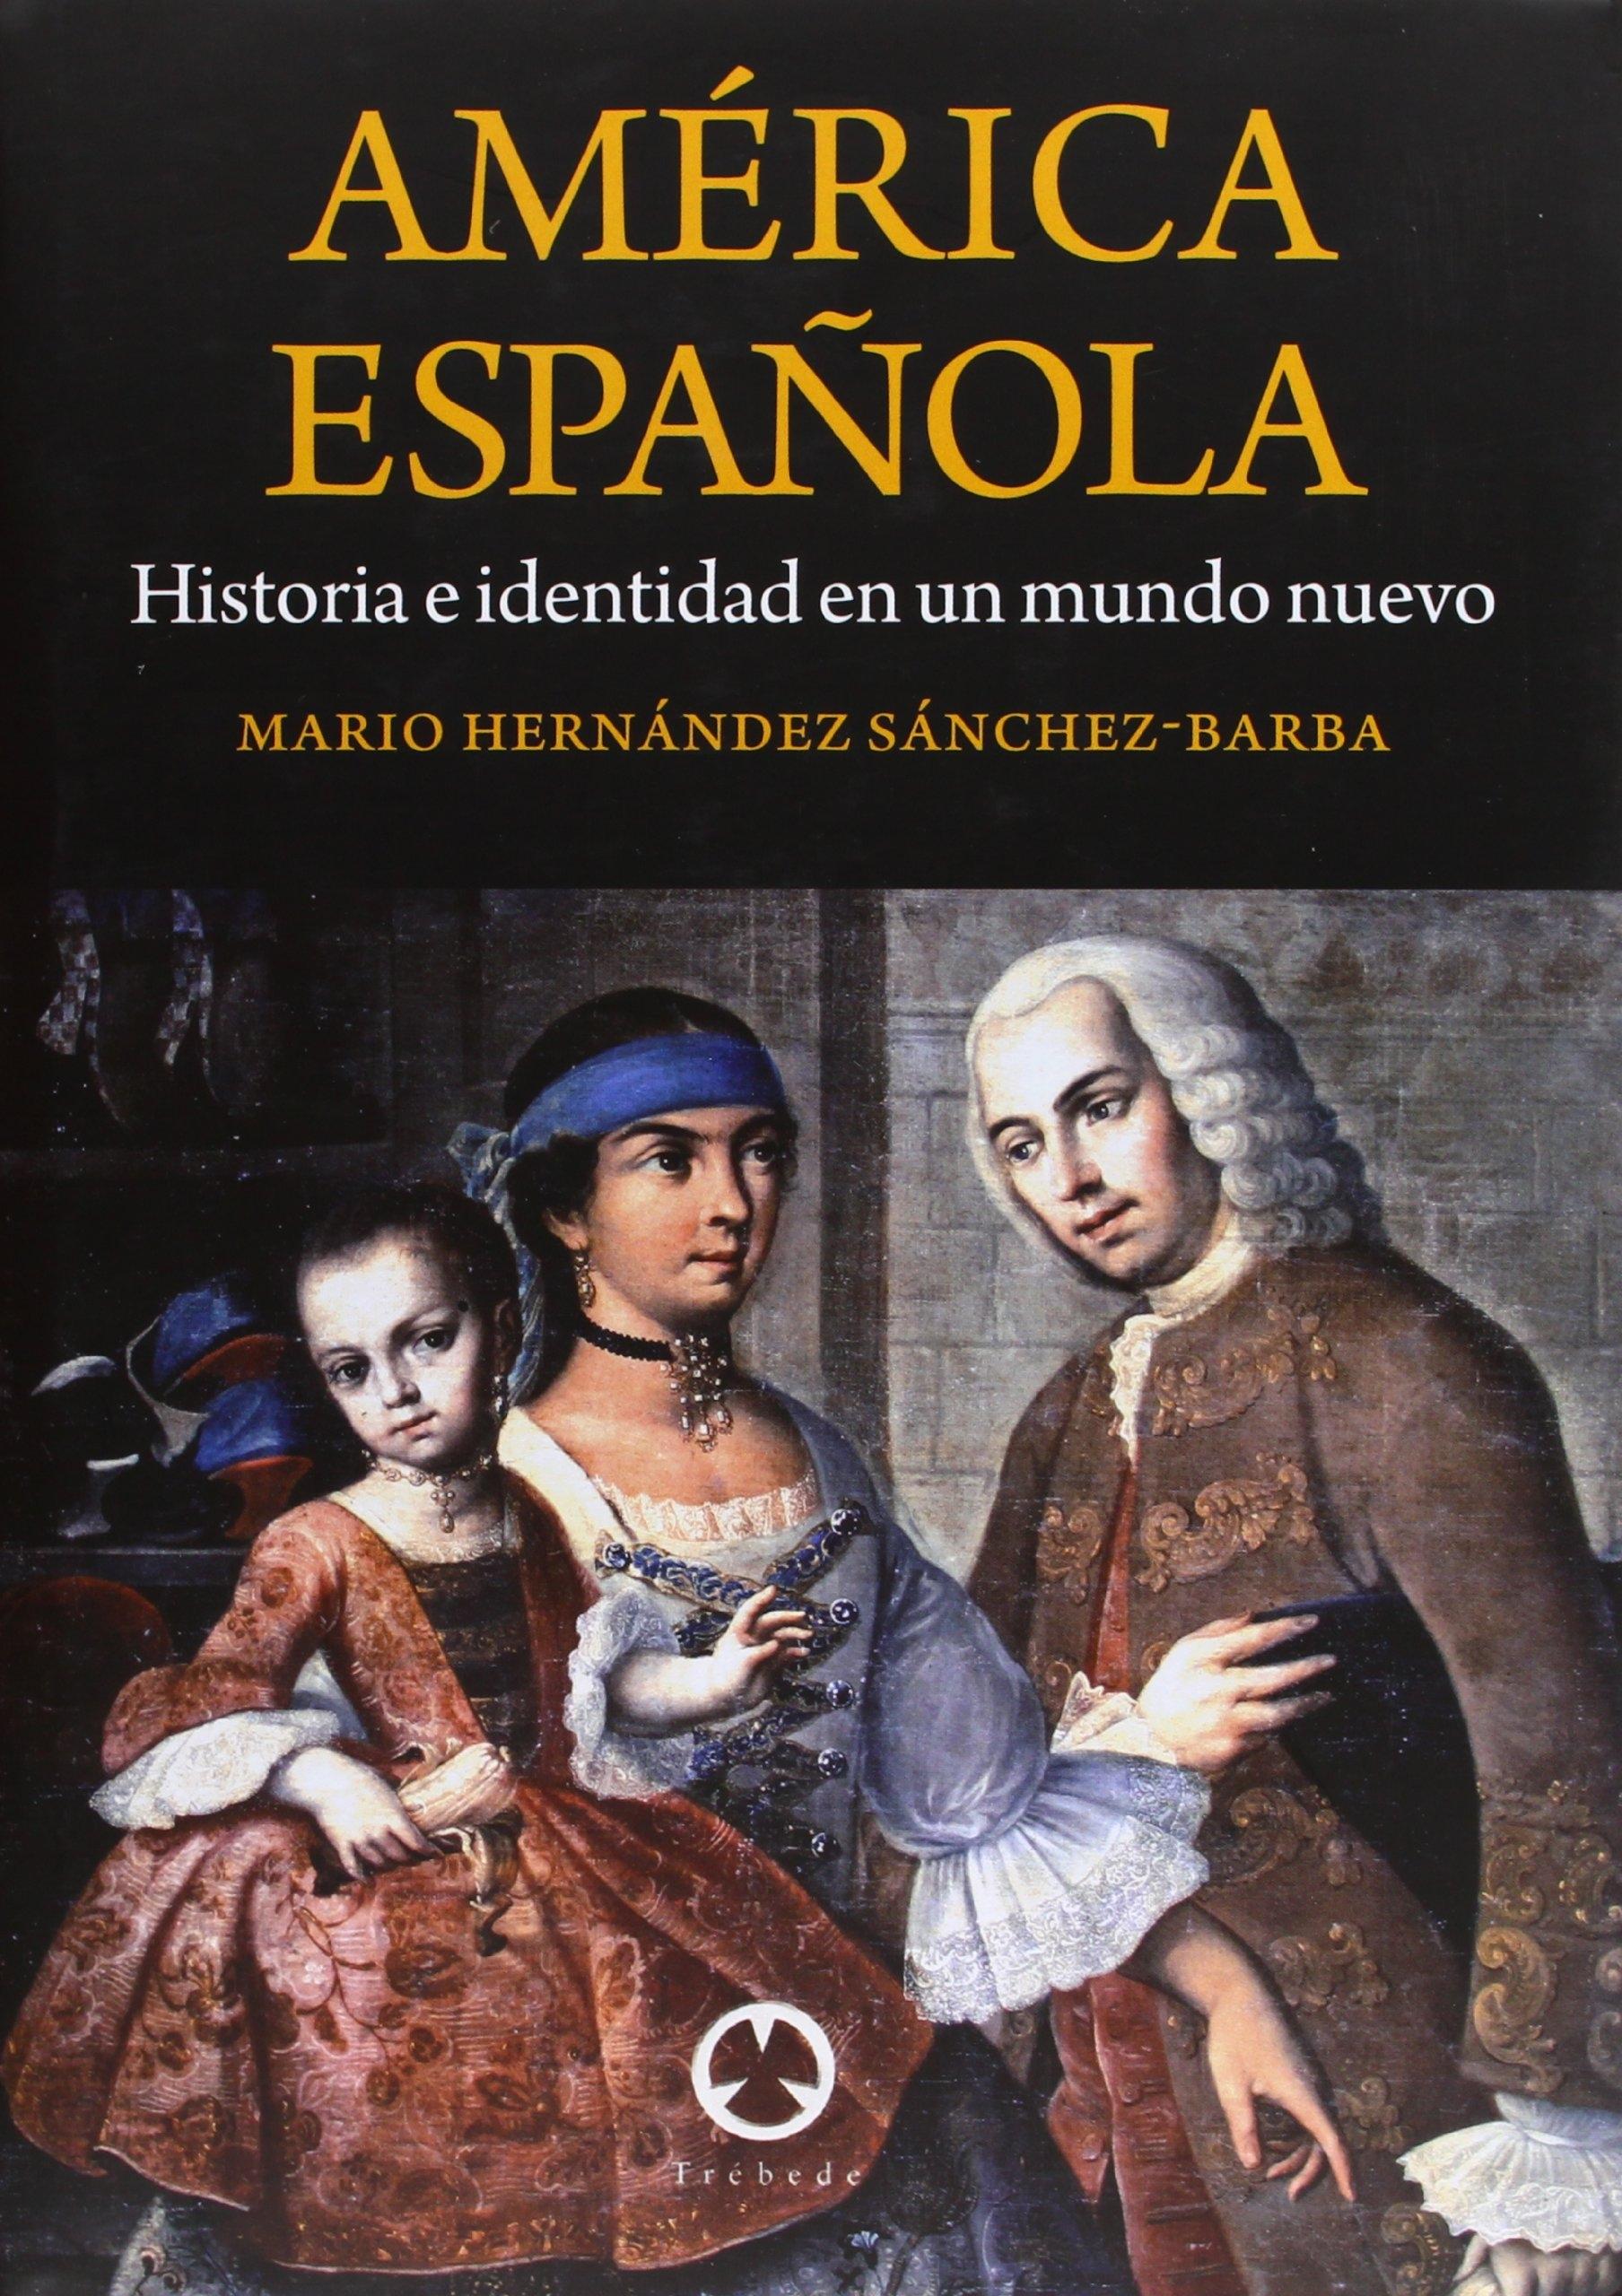 AMÉRICA ESPAÑOLA "HISTORIA E IDENTIDAD EN UN MUNDO NUEVO"